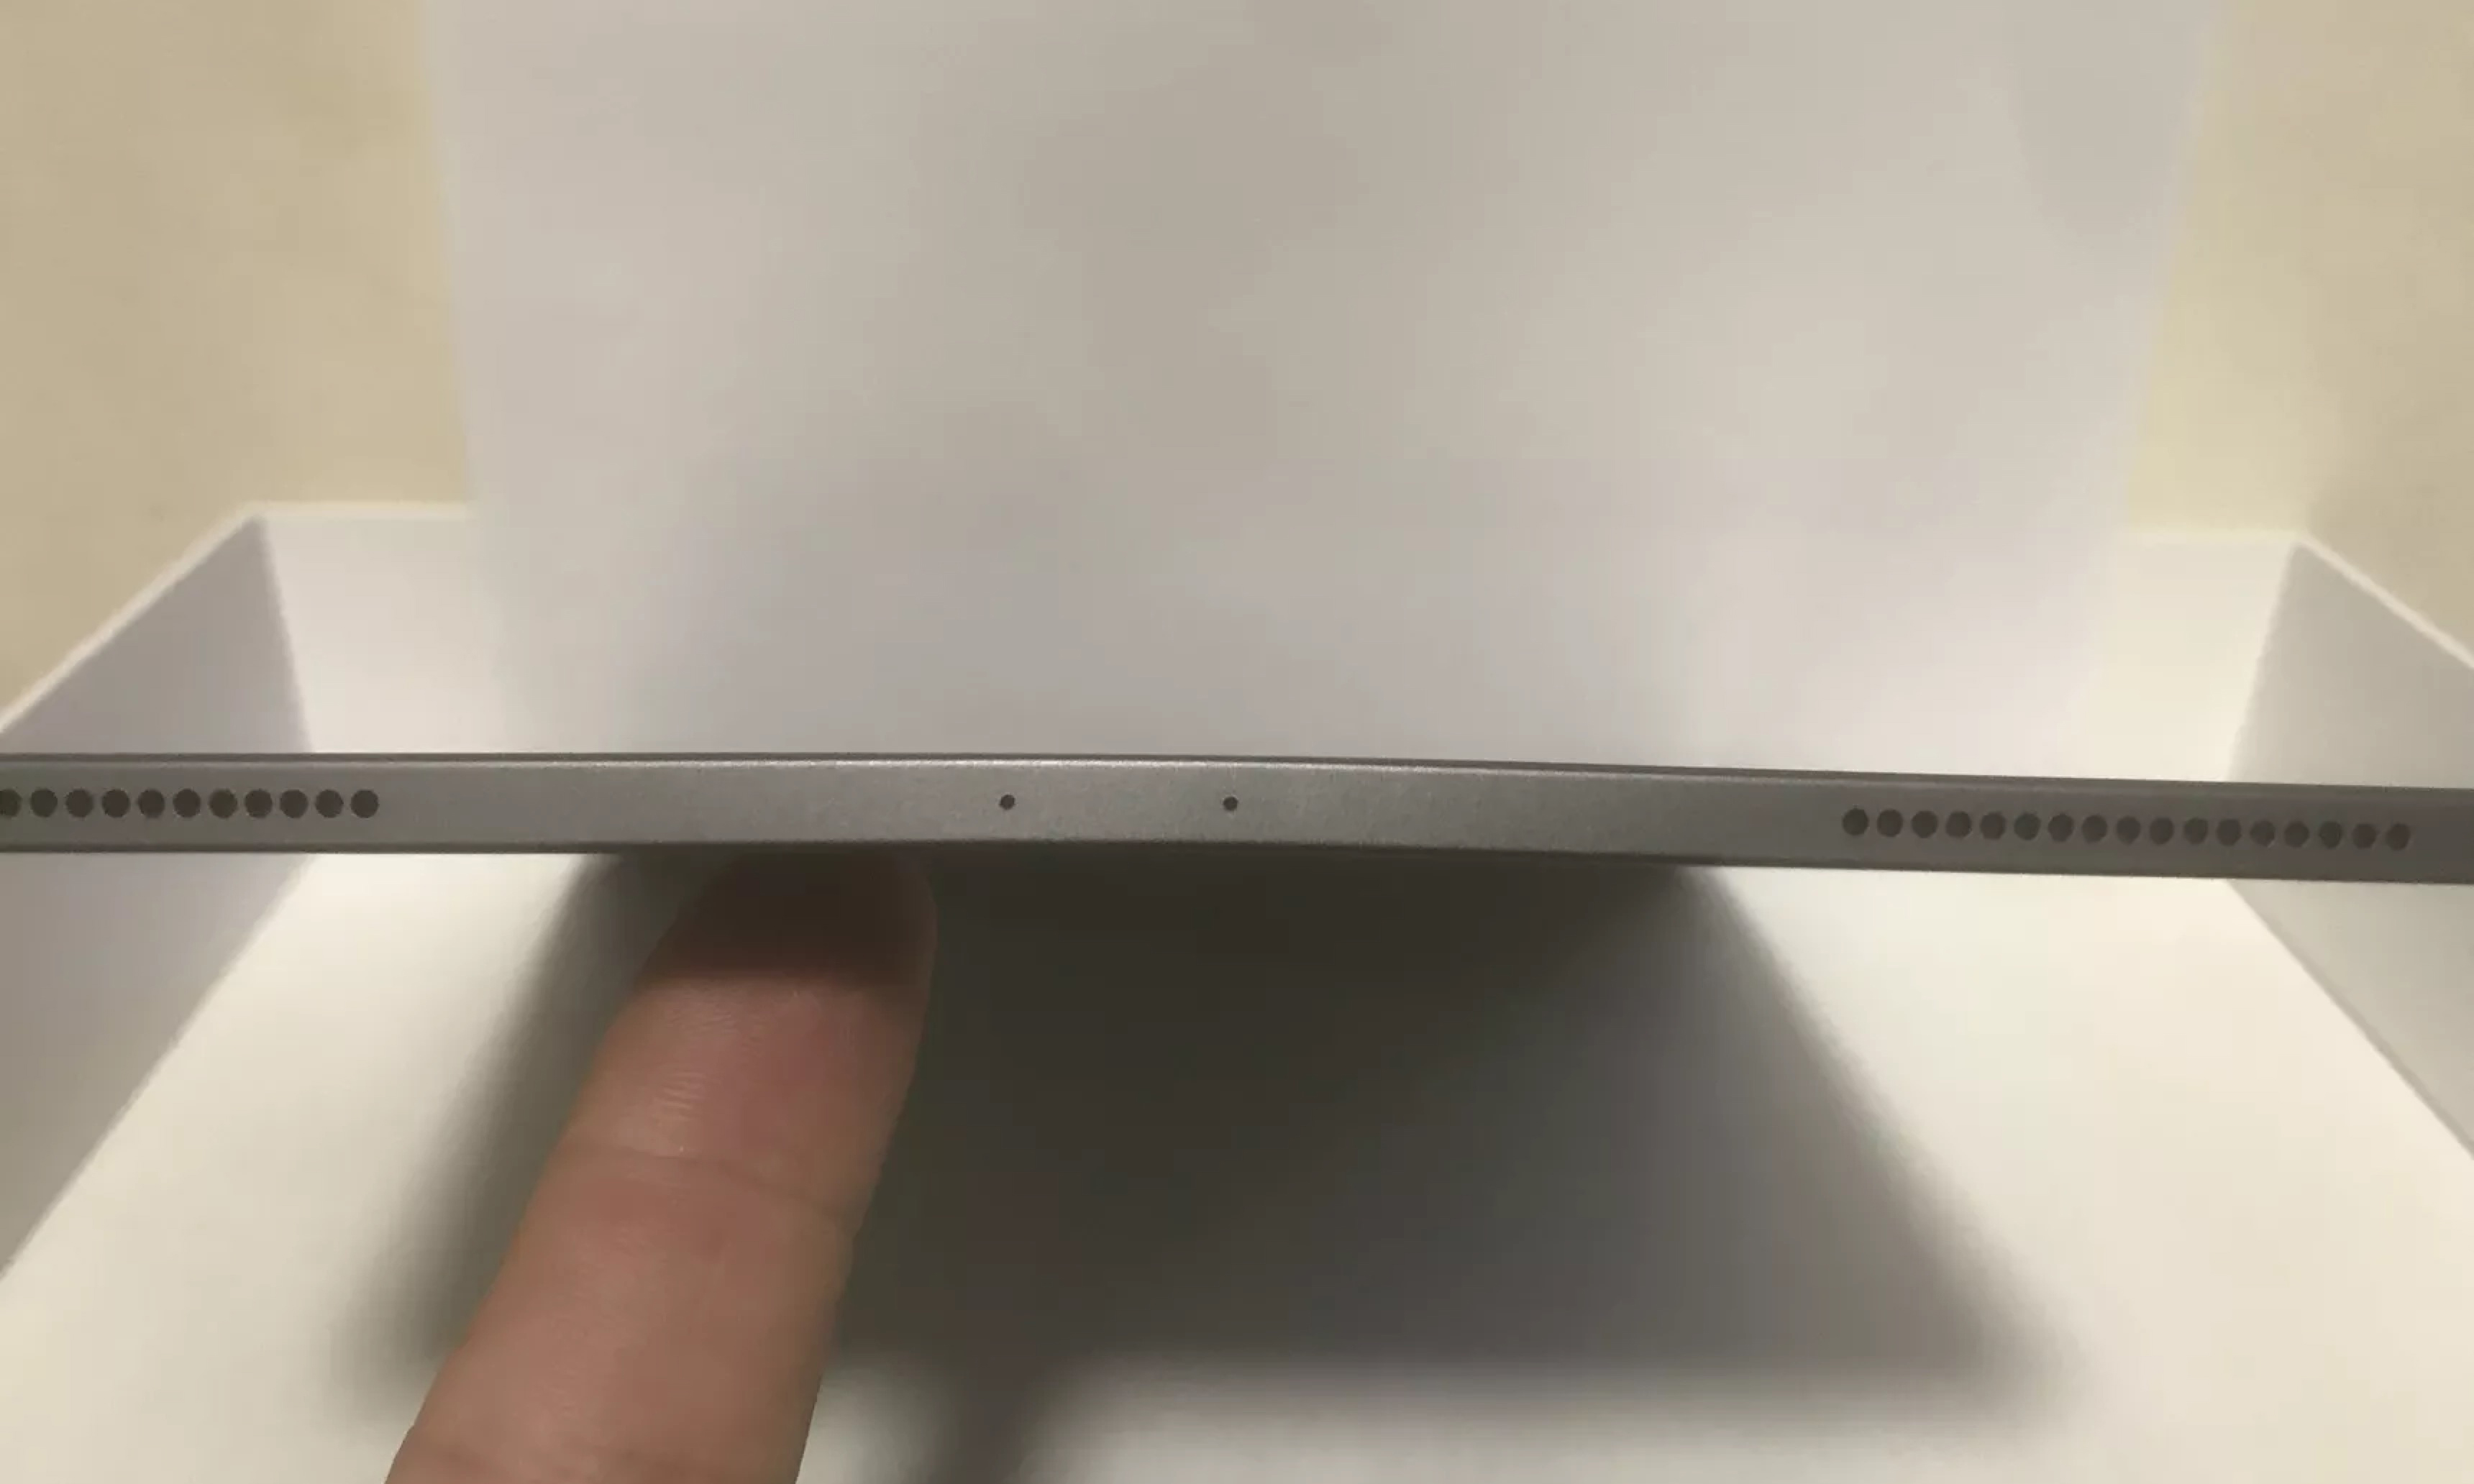 部分 2018 款 iPad Pro 发生弯曲，苹果：正常现象